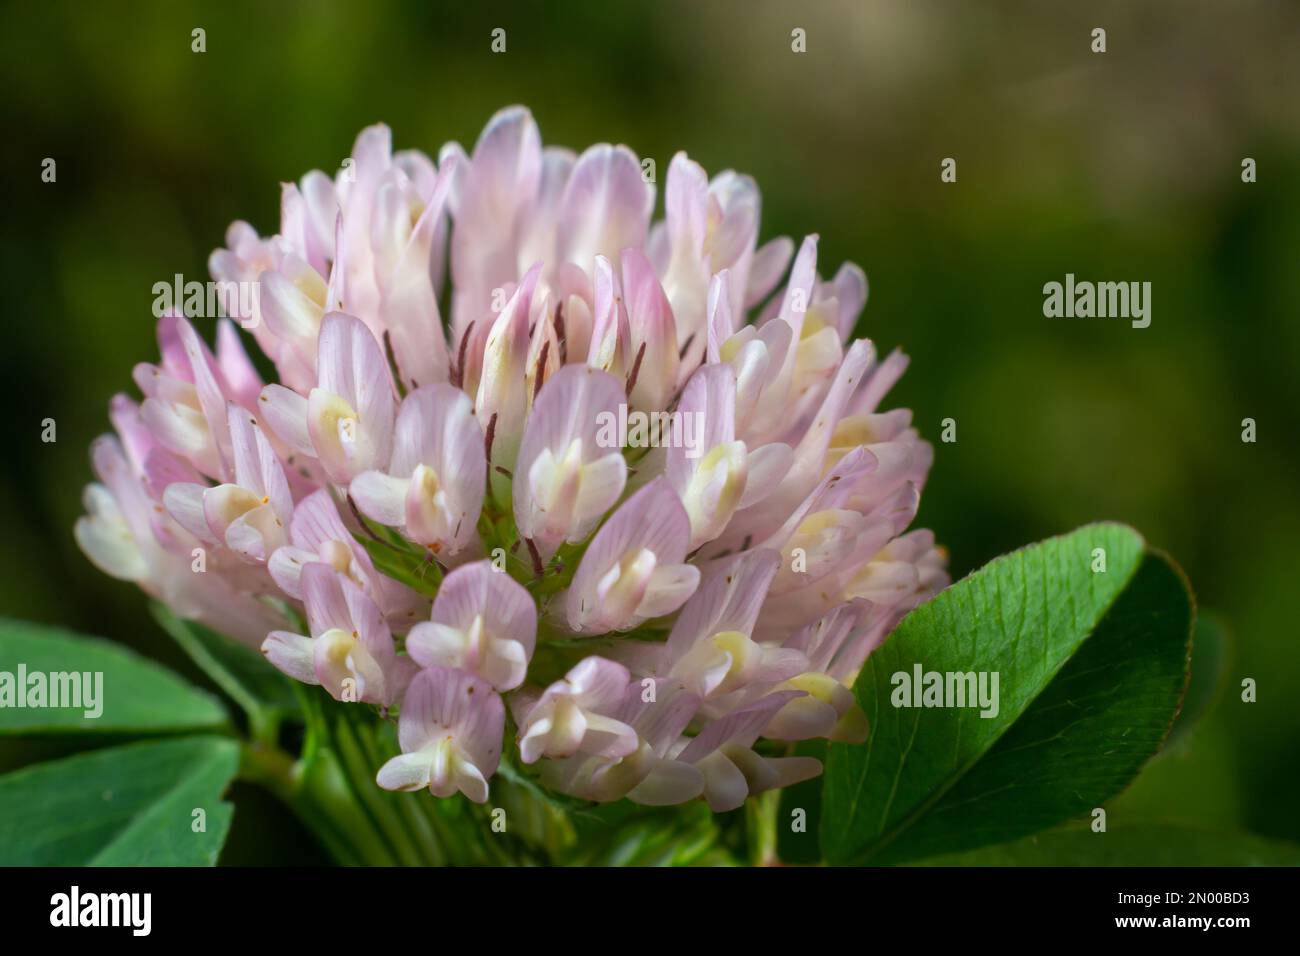 Makroaufnahmen von Clover Trifolium pratense oder Trefoil-Blumenkraut auf unscharfem Naturhintergrund an Sonnentagen im Frühling oder Sommer. Stockfoto